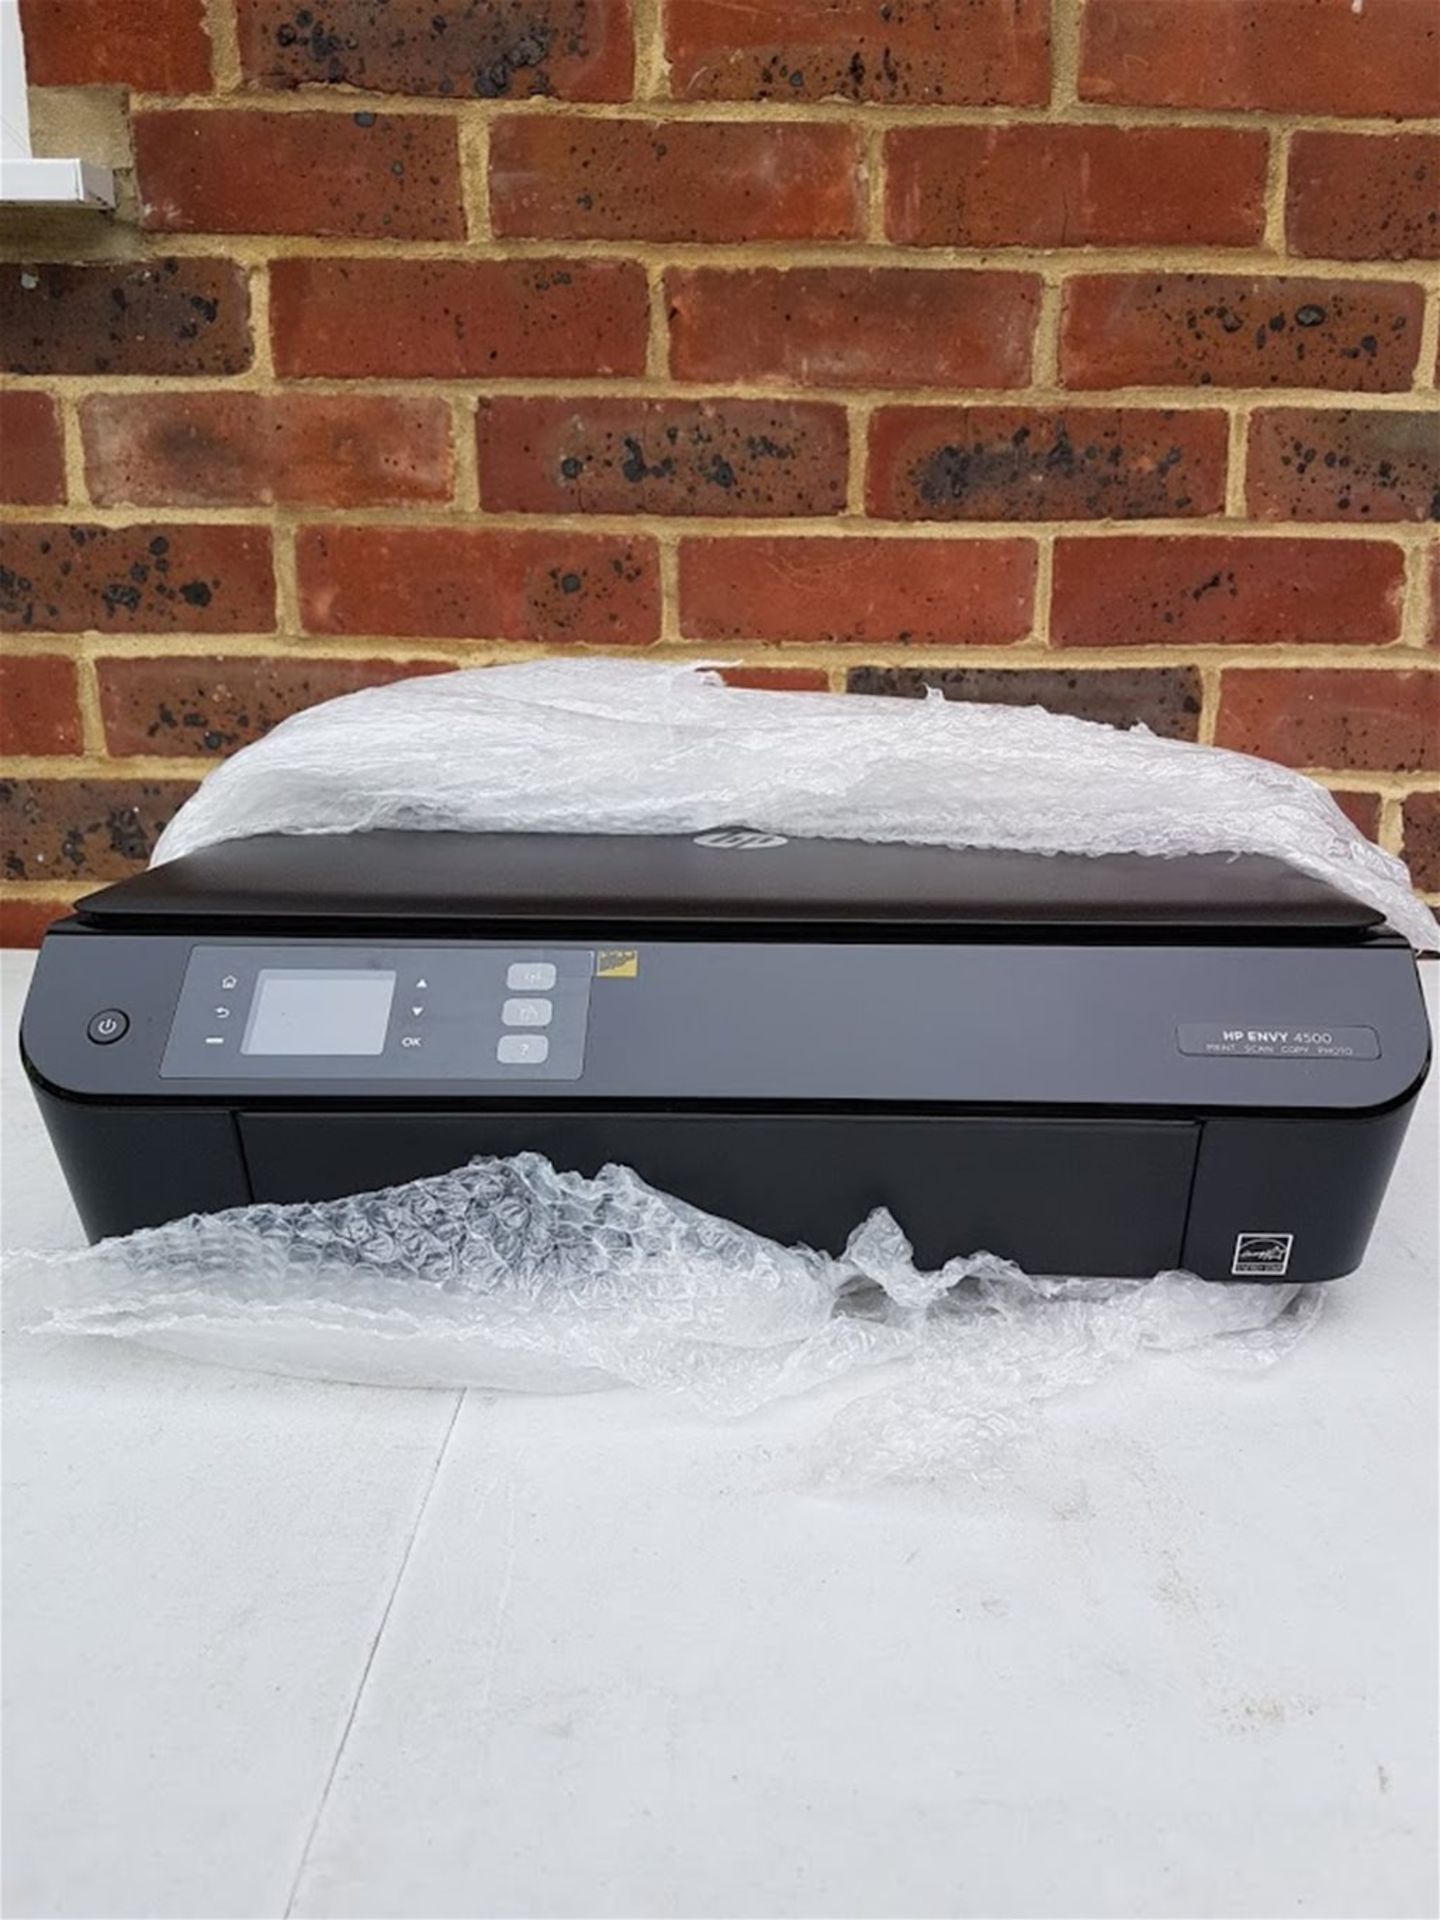 HP Envy 4500 e-All-In-One Printer RRP £69.99 Customer Return